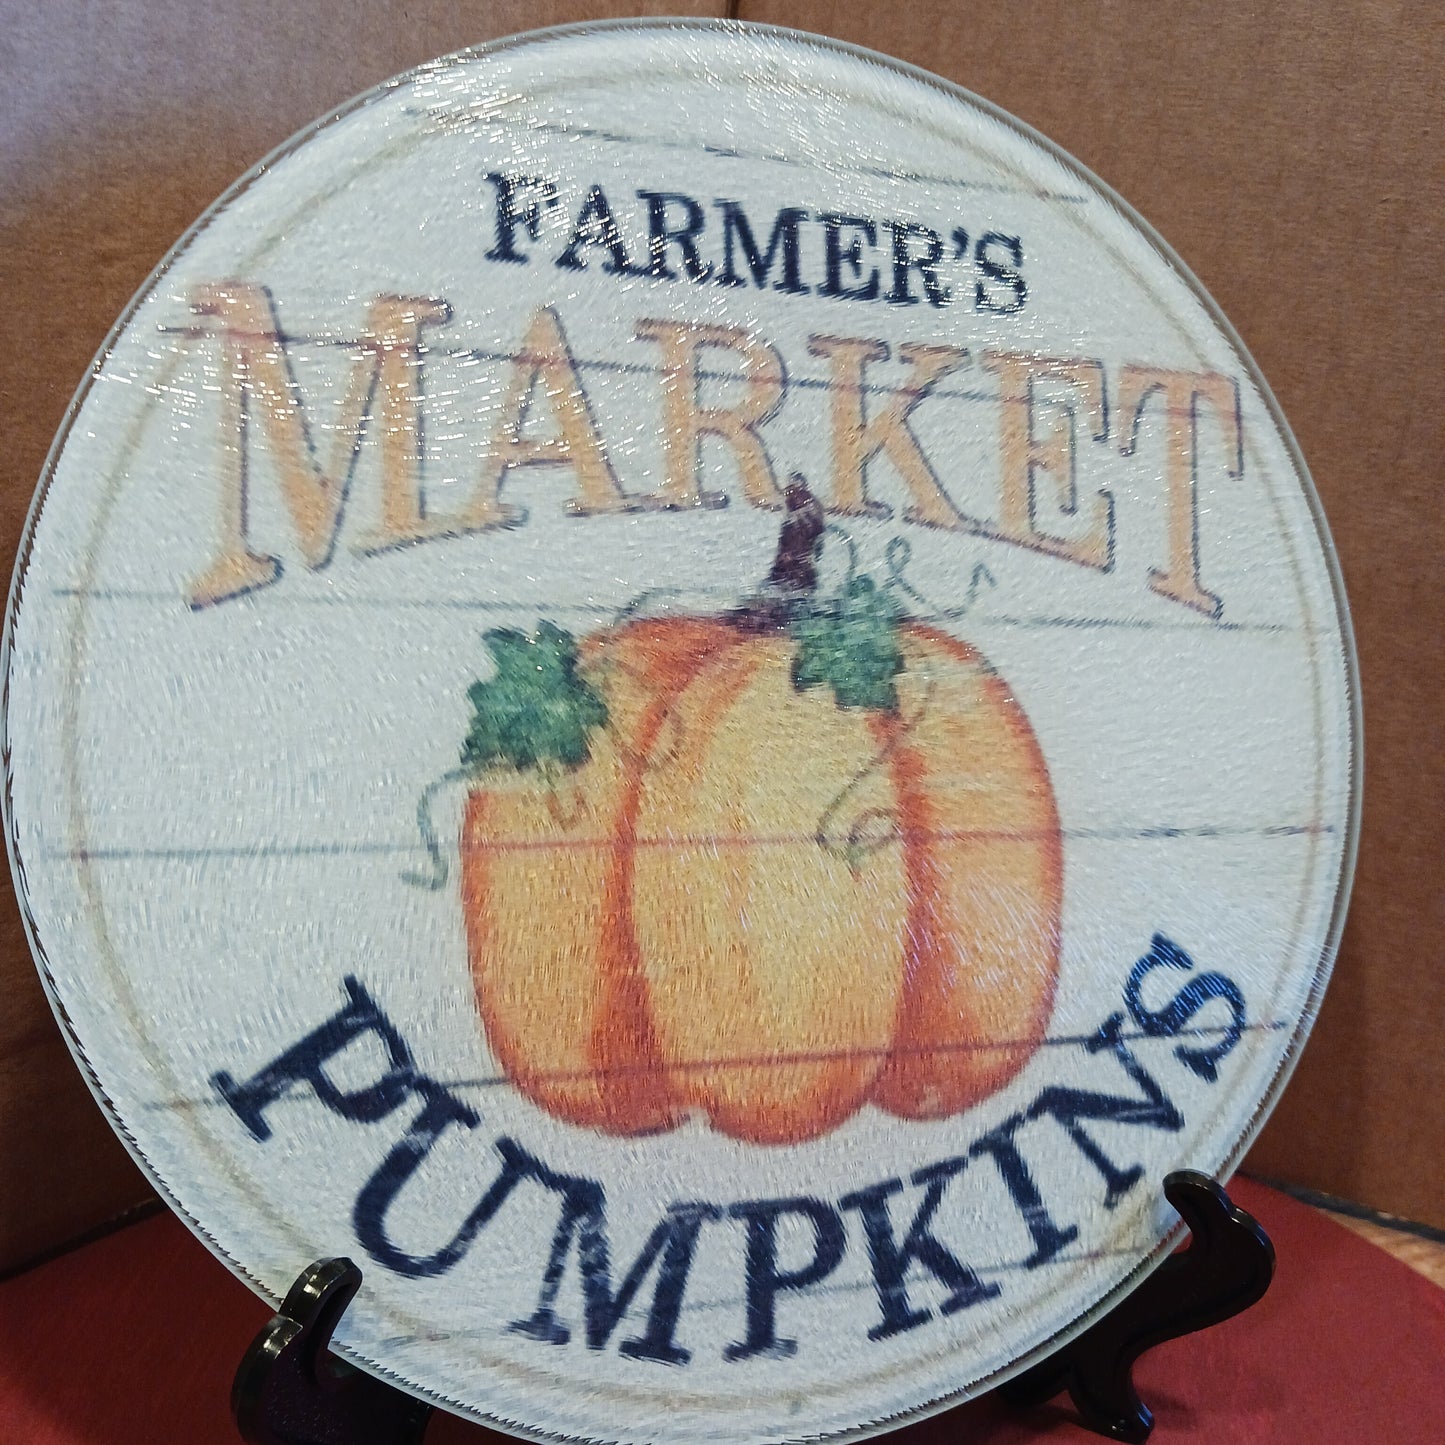 Farmers market pumpkins